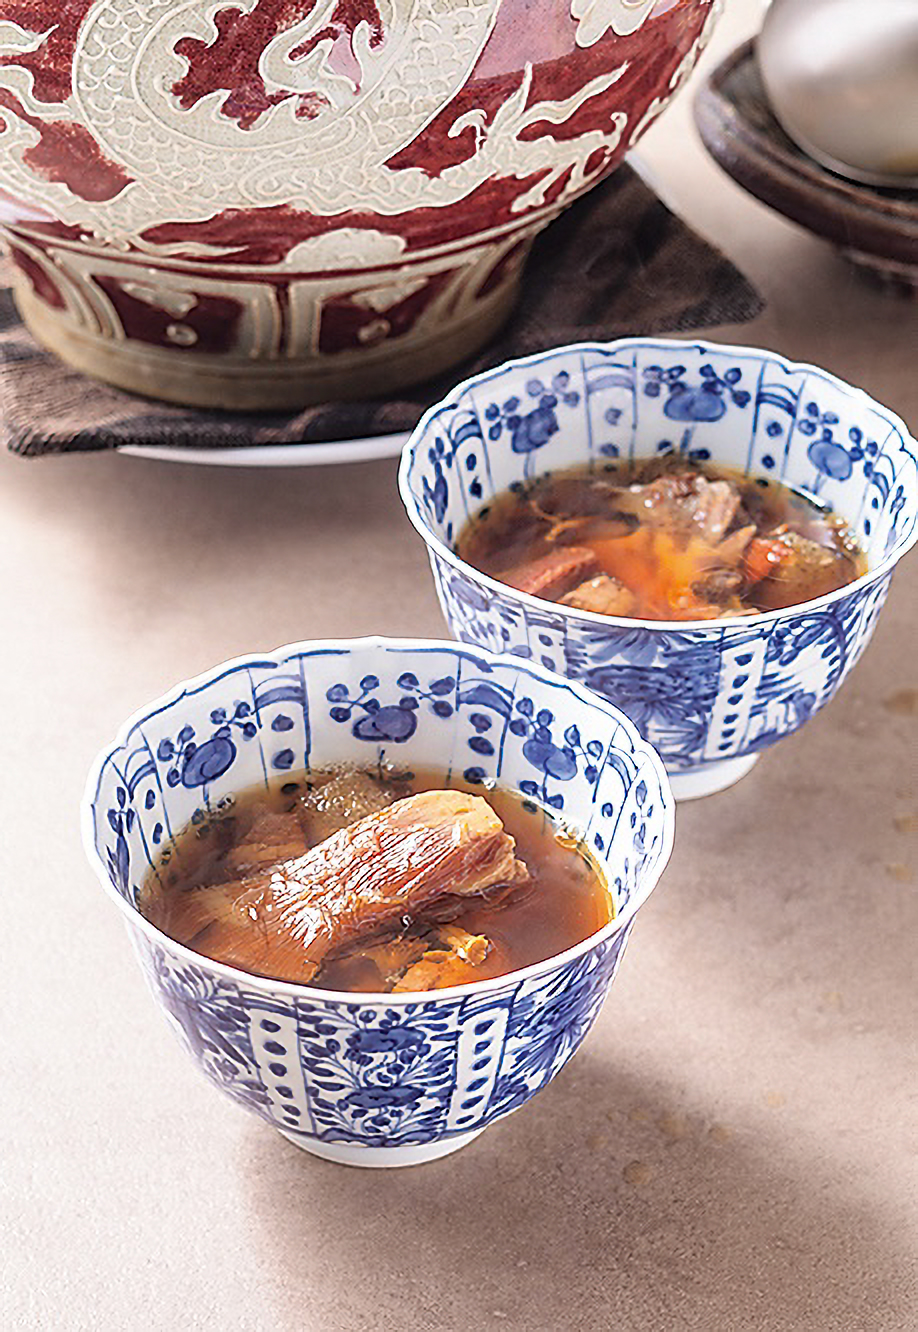 「旬華 なか村」の広東式蒸しスープ